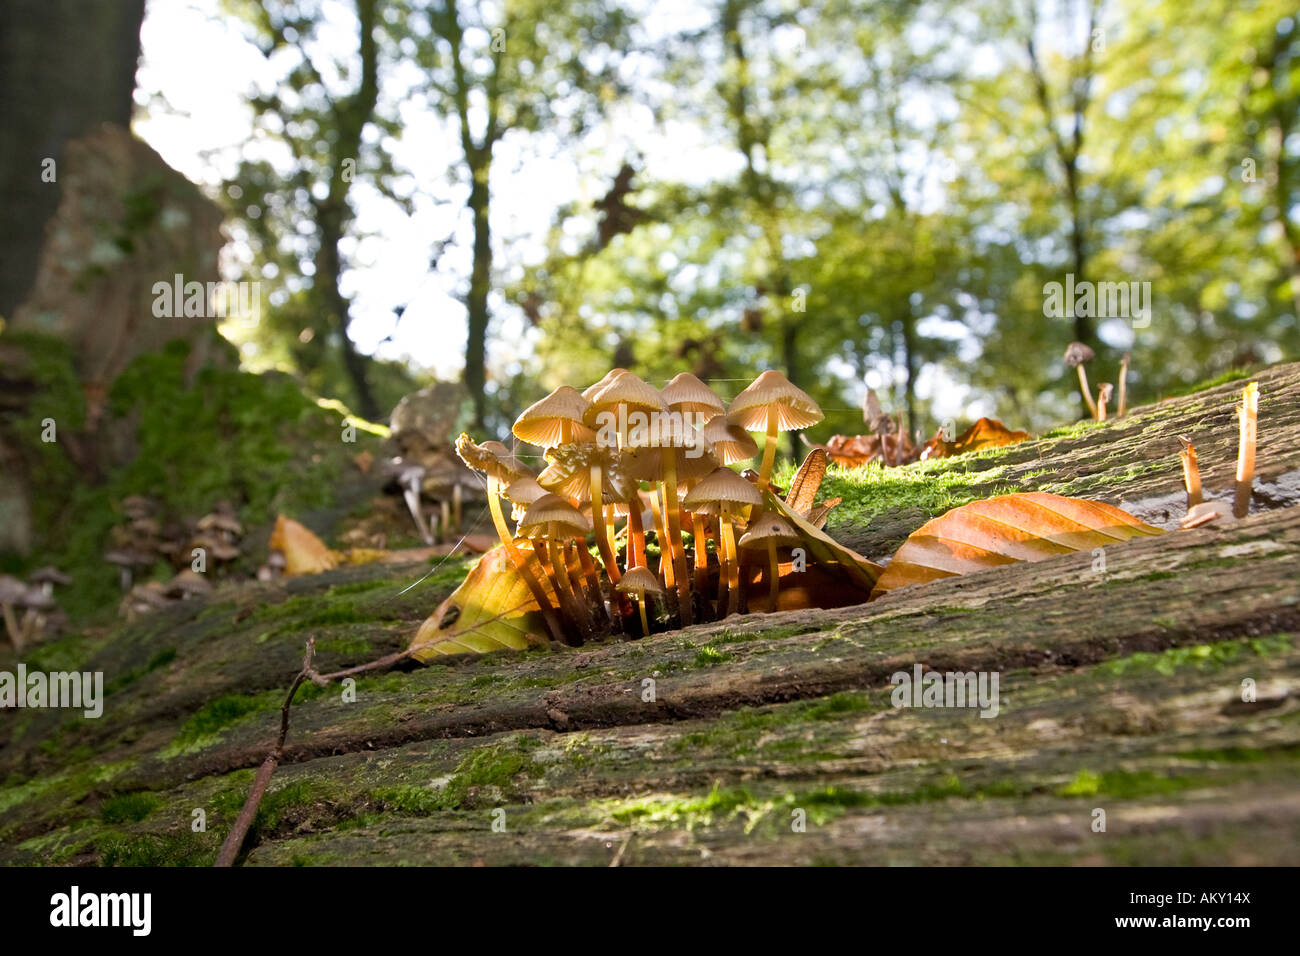 Pilze auf Moos an einem verschimmelten Baumstamm Stockfoto